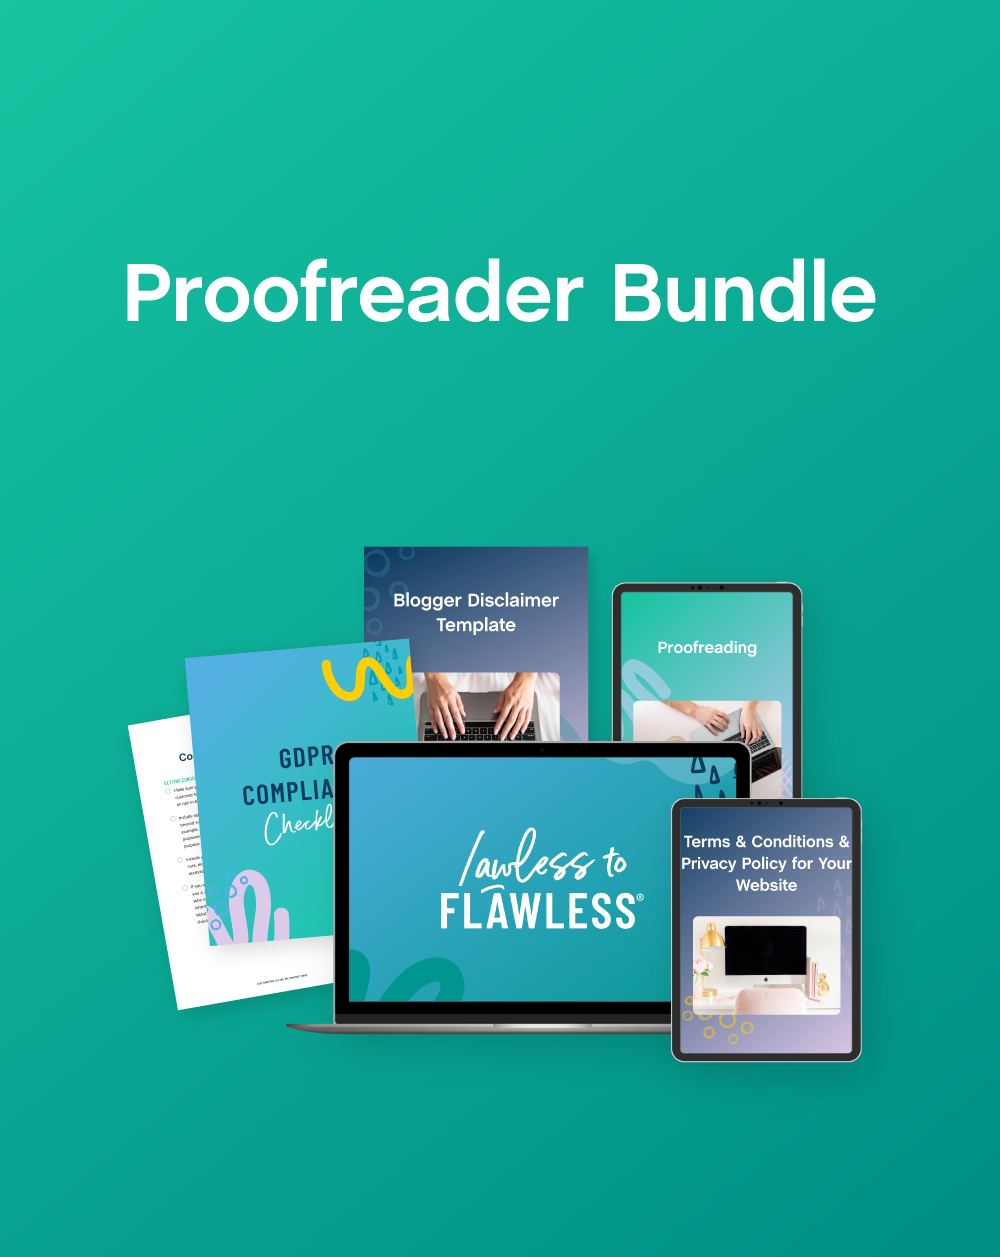 Proofreader Bundle